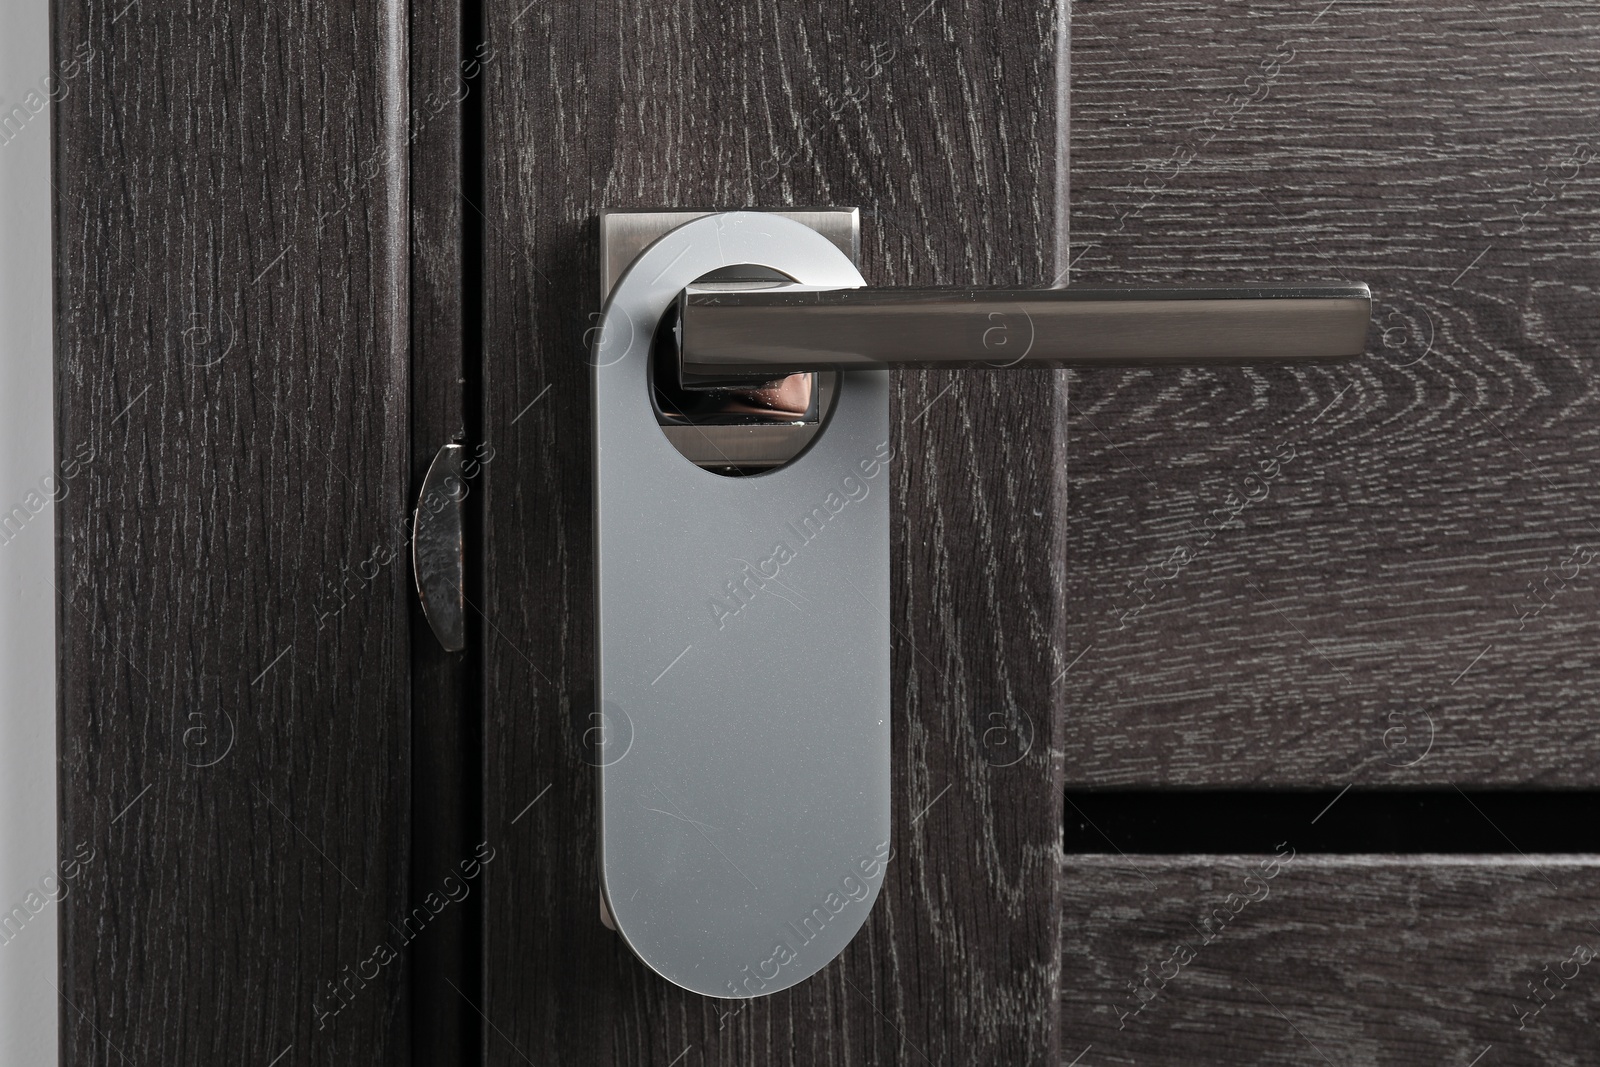 Photo of Closed wooden door with blank hanger on metal handle, closeup